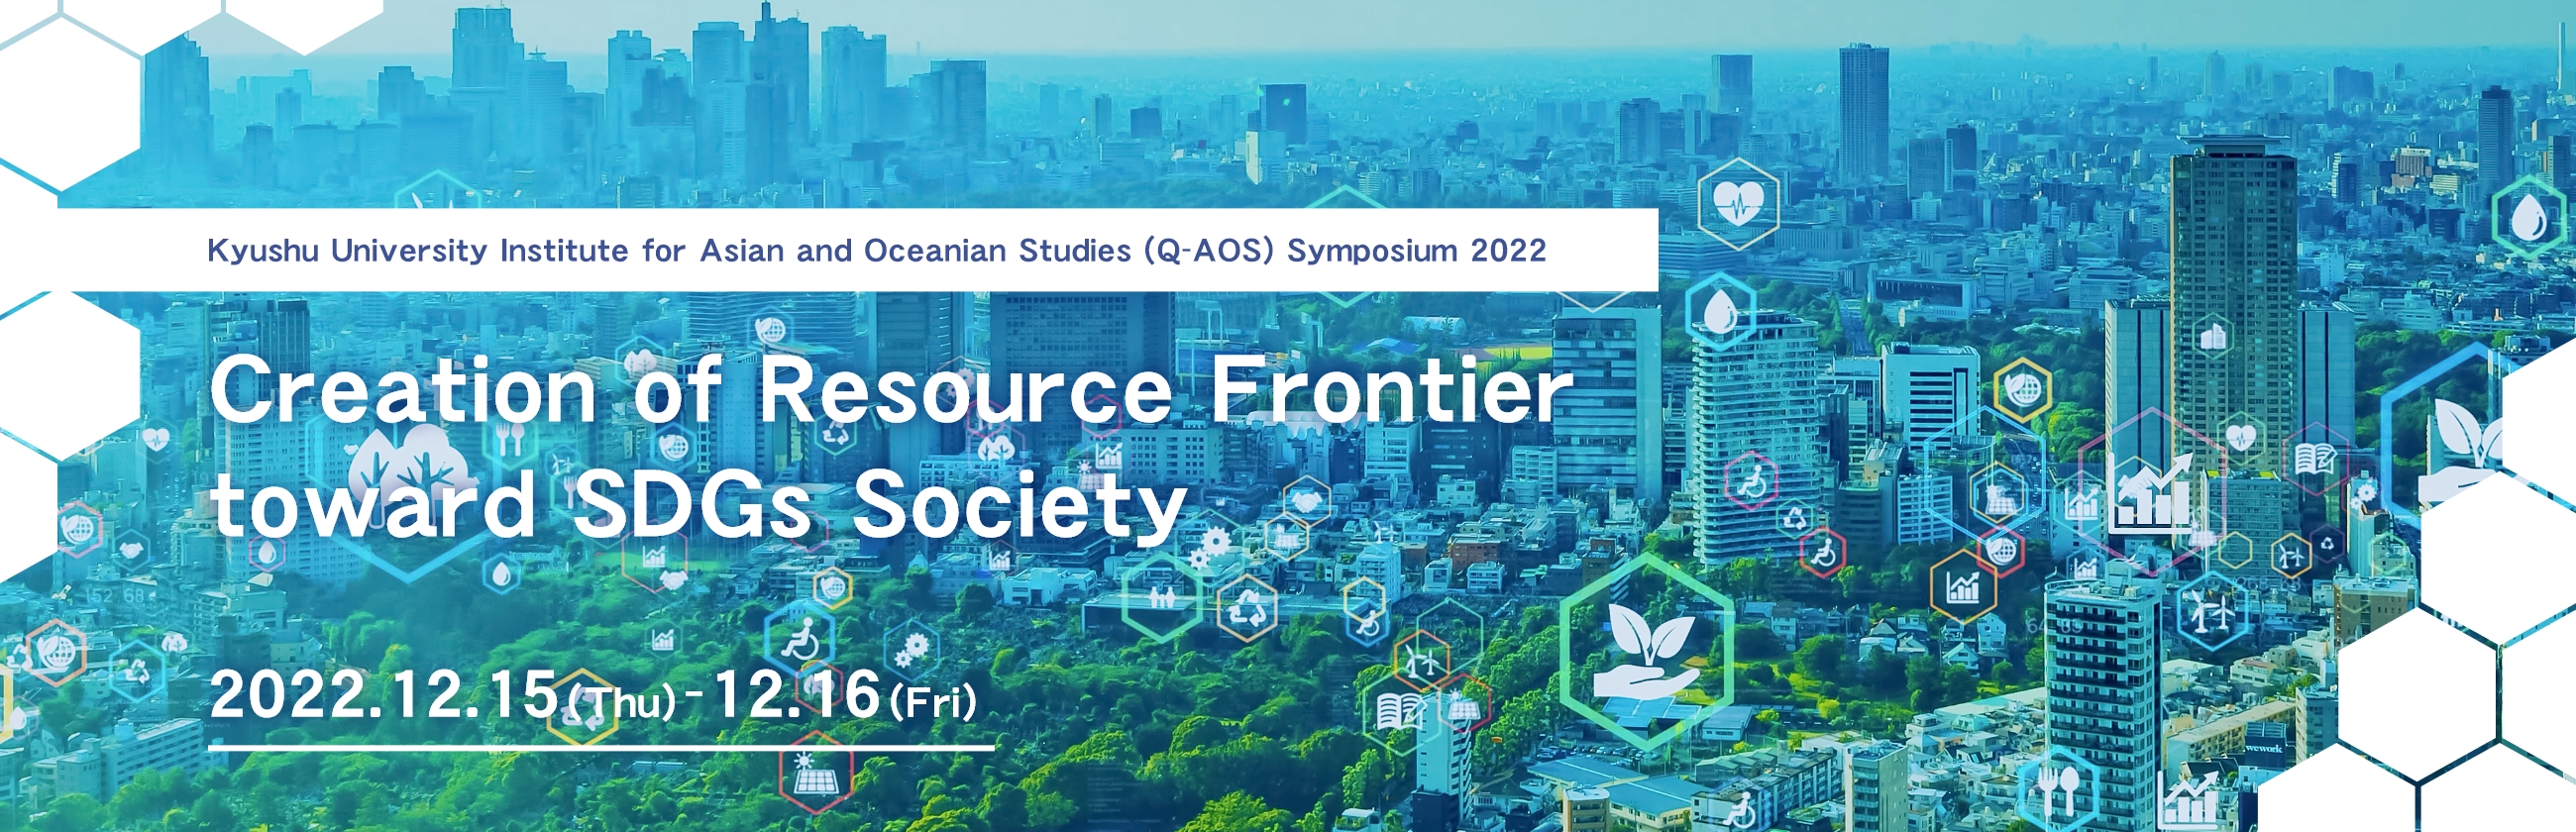 Q-AOS Symposium 2022